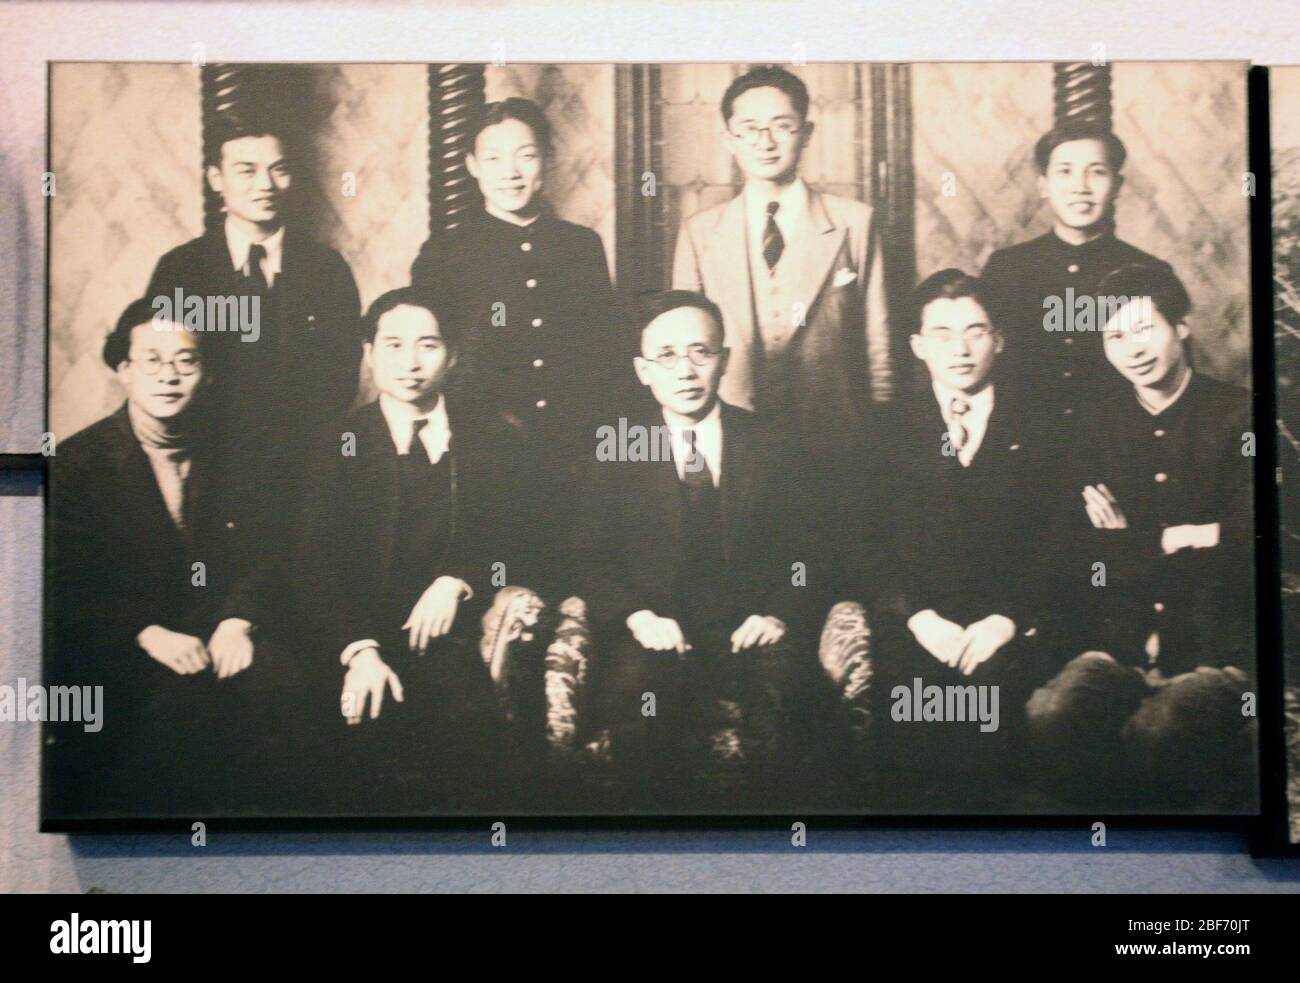 En 1924 se estableció la rama izquierda de la Liga de Tokio y Guo Moruo tomó una foto de grupo con miembros de la Alianza de fotos históricas en la sala de exposición Foto de stock